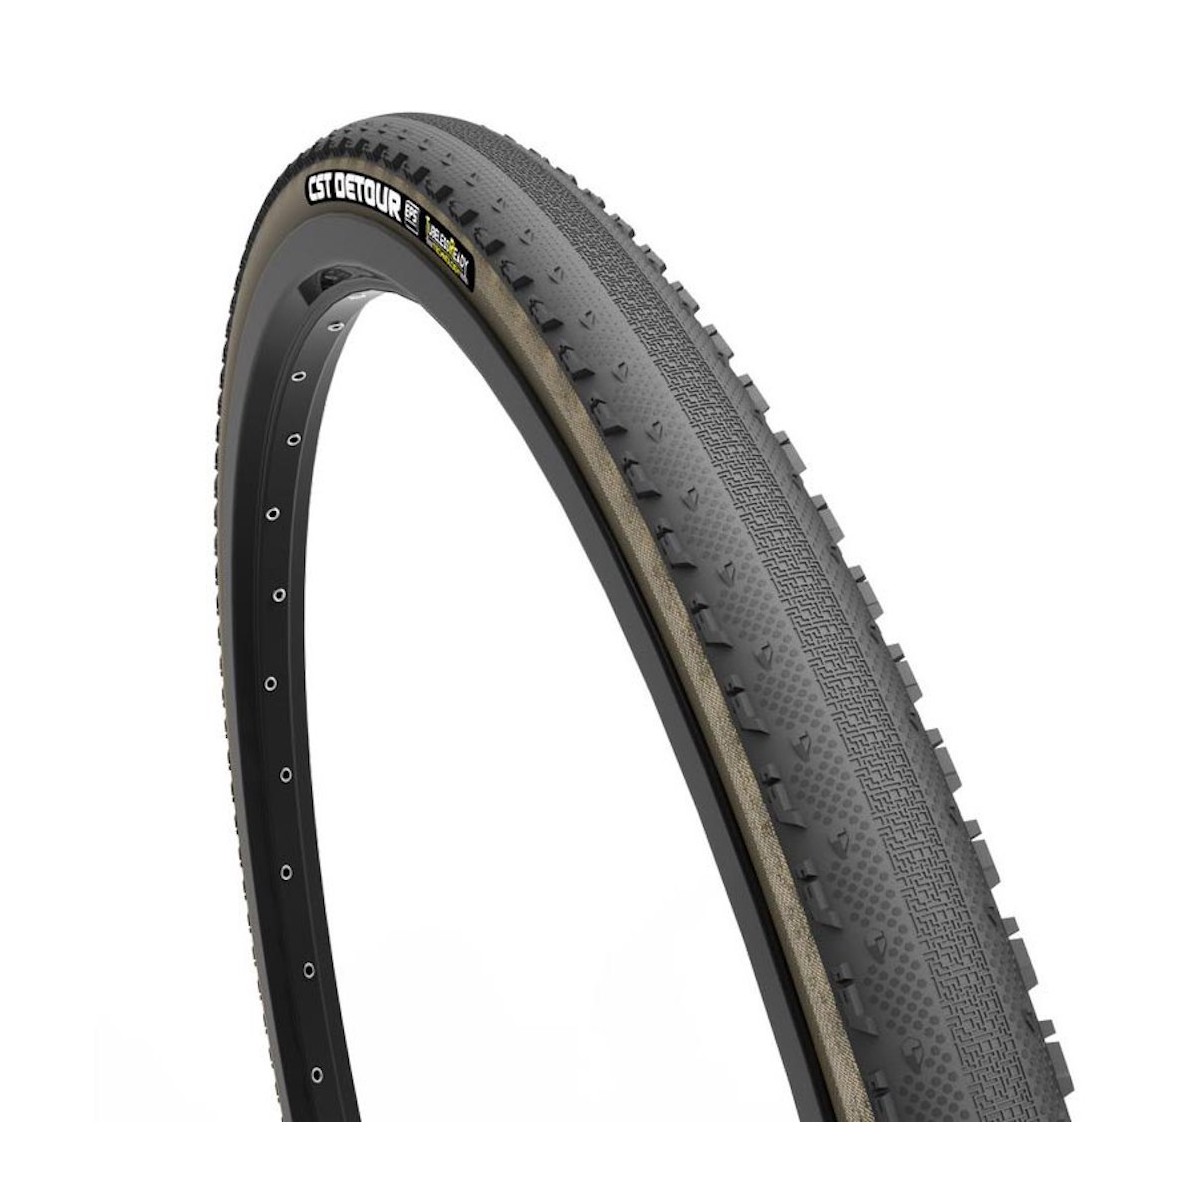 CST DETOUR TR C3015 700 X 38C tubeless tyre